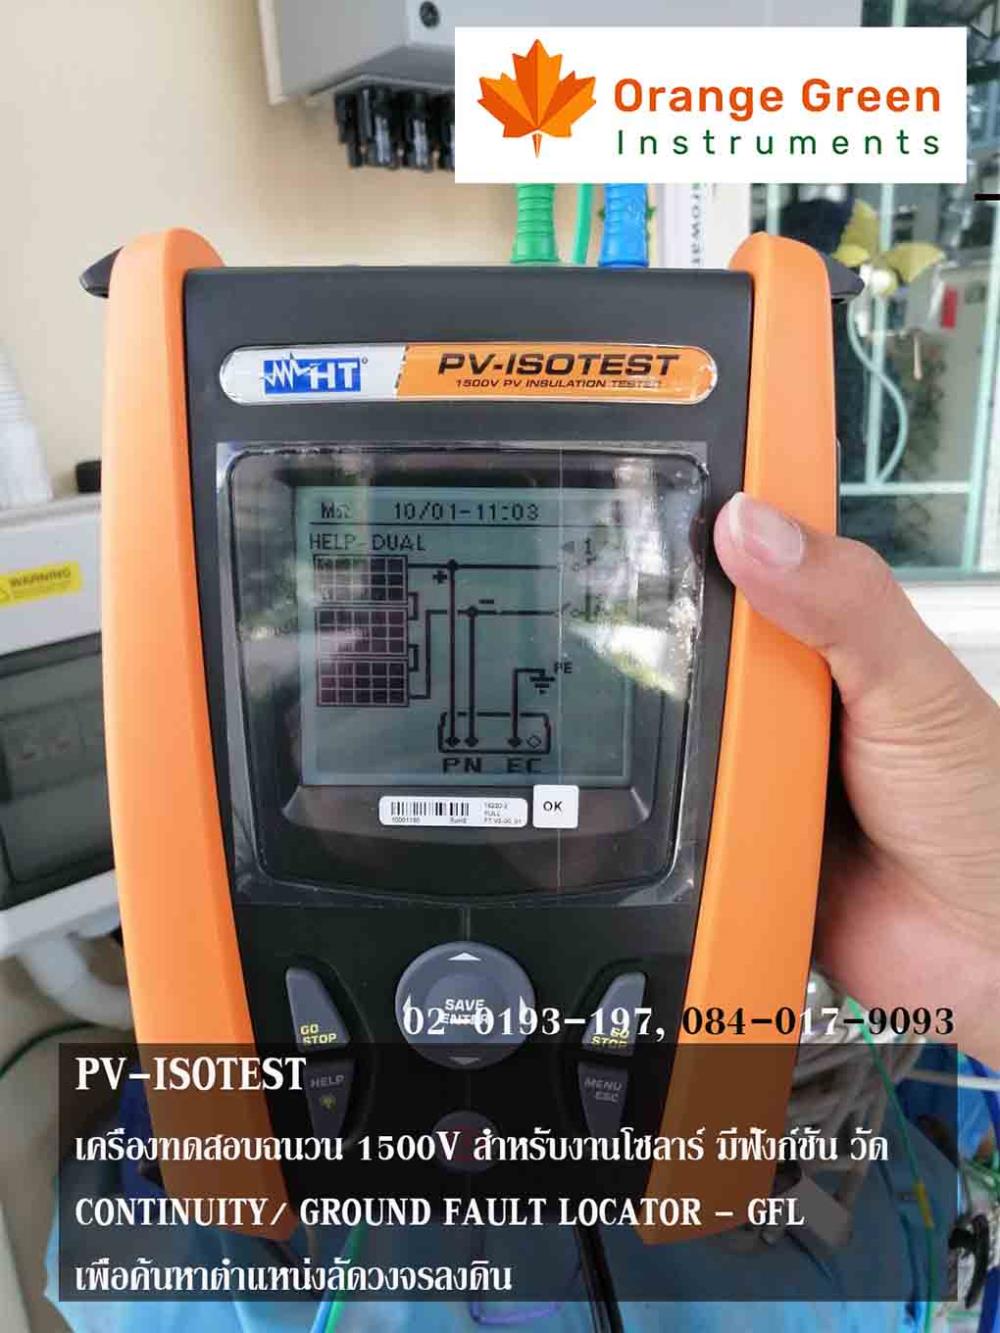 PV-ISOTEST HT ITALIA เครื่องวัดฉนวนระบบโซลาร์เซลล์ 1500V ,PV-ISOTEST, PVISOTEST,HT ITALIA,Instruments and Controls/Instruments and Instrumentation